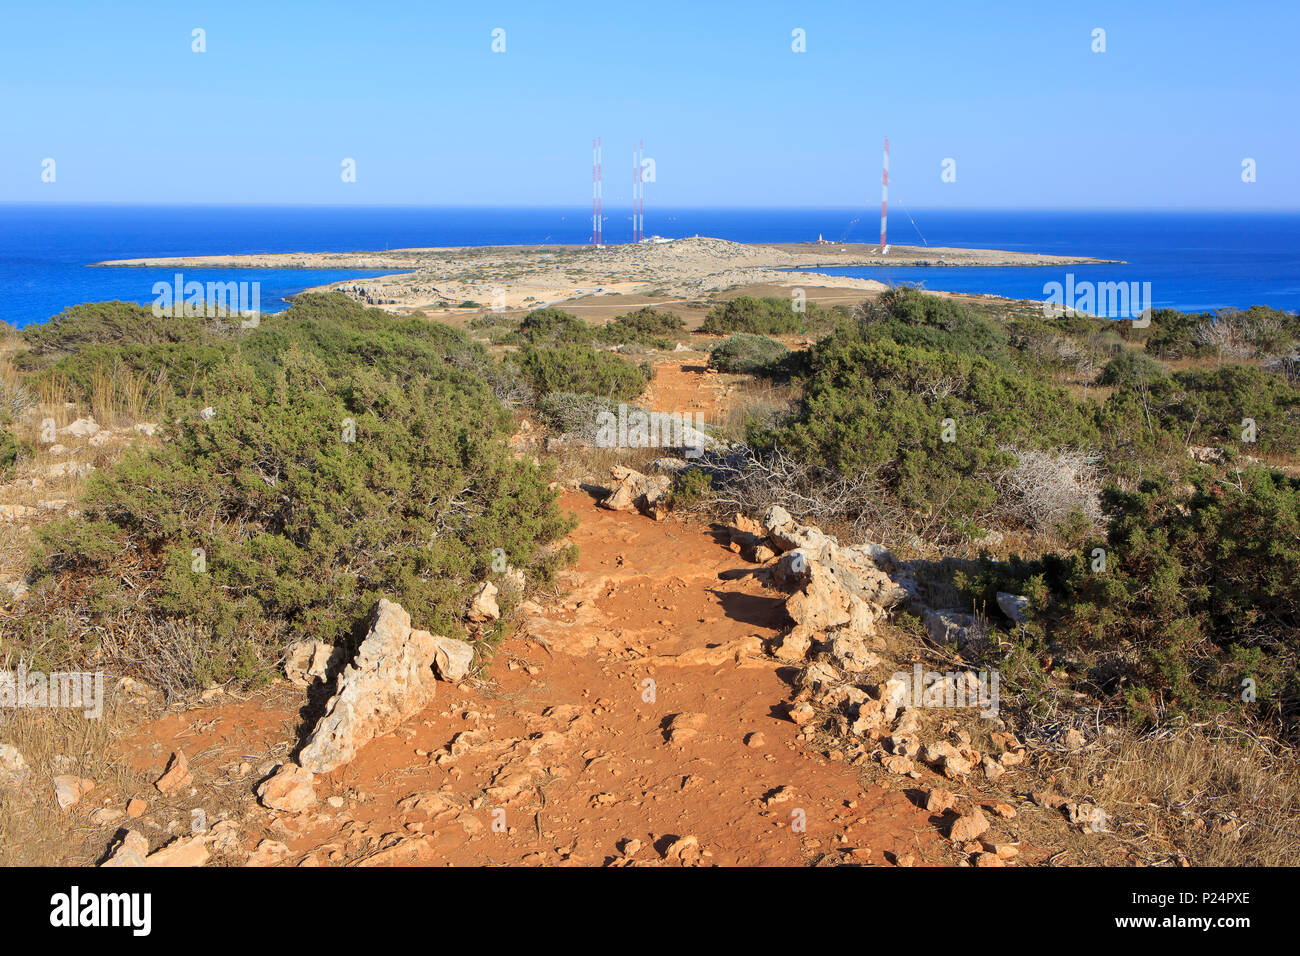 Le antenne e il montante radiatori utilizzati dal mediumwave stazione emittente TWR a Cape Greco, Cipro Foto Stock